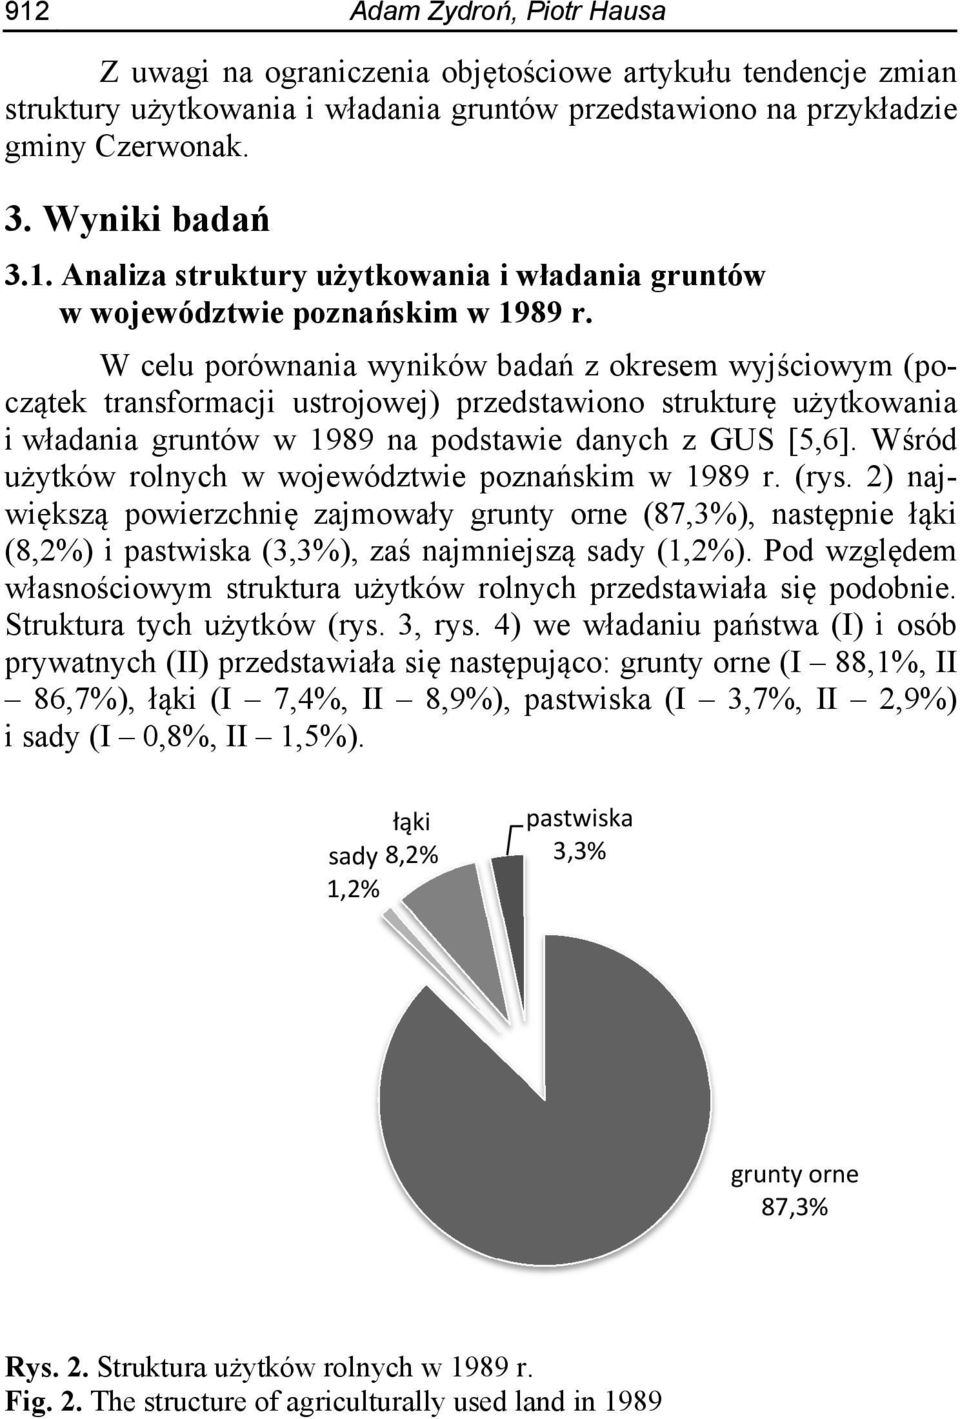 Wśród użytków rolnych w województwie poznańskim w 1989 r. (rys. 2) największą powierzchnię zajmowały grunty orne (87,3%), następnie łąki (8,2%) i pastwiska (3,3%), zaś najmniejszą sady (1,2%).